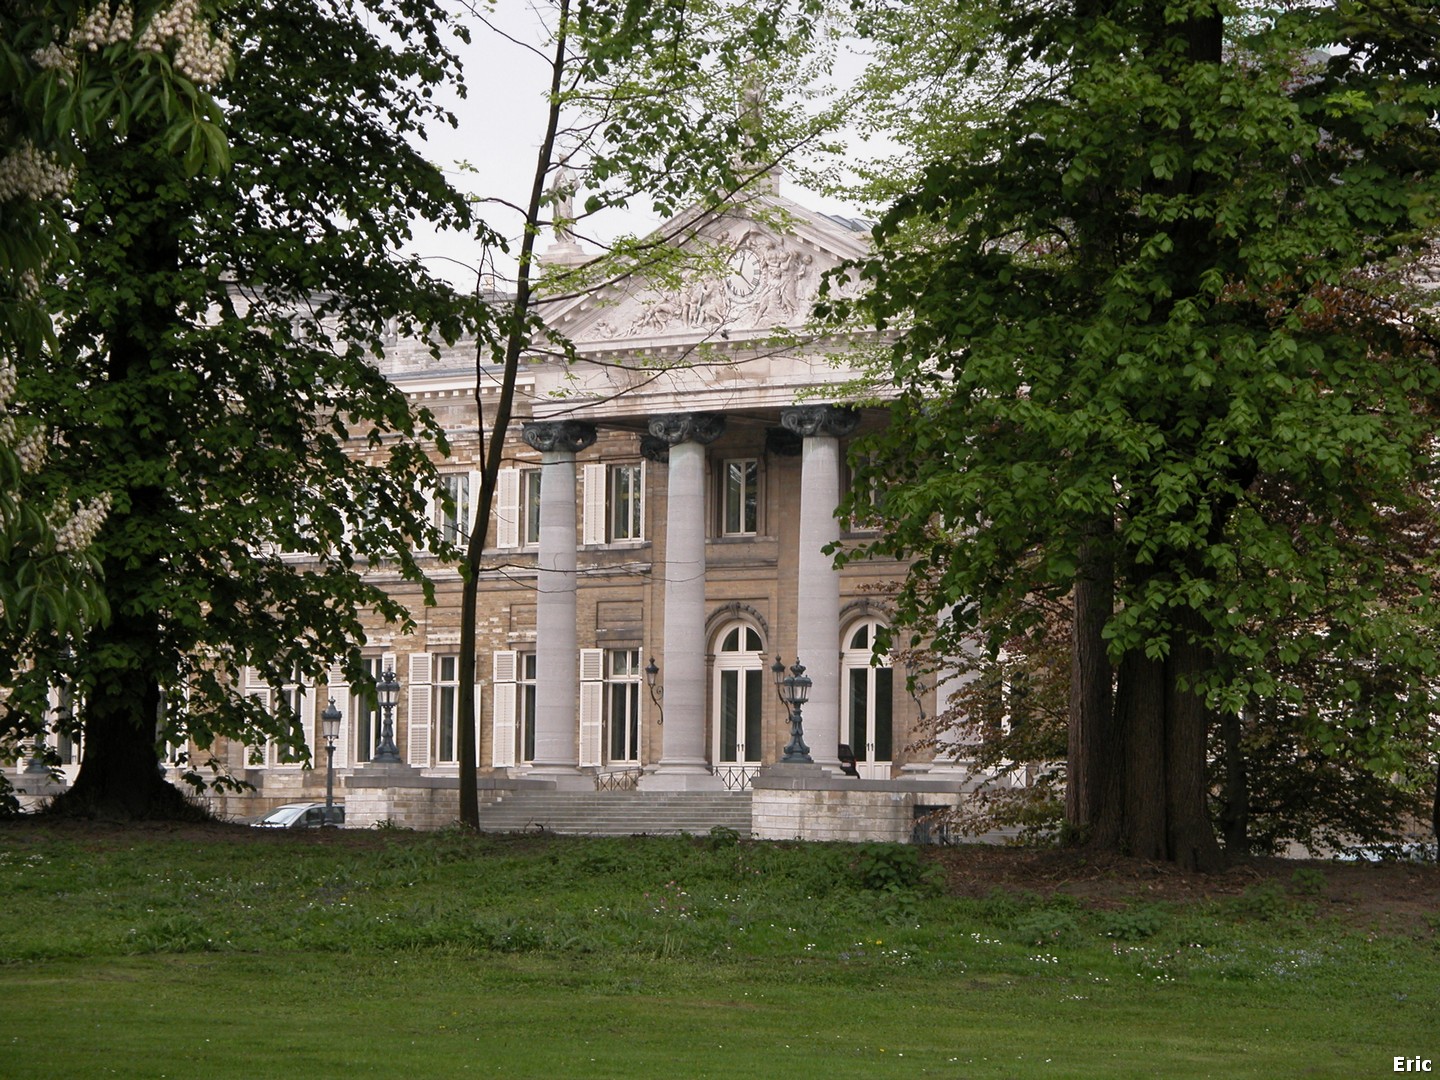 Château Royal de Laeken